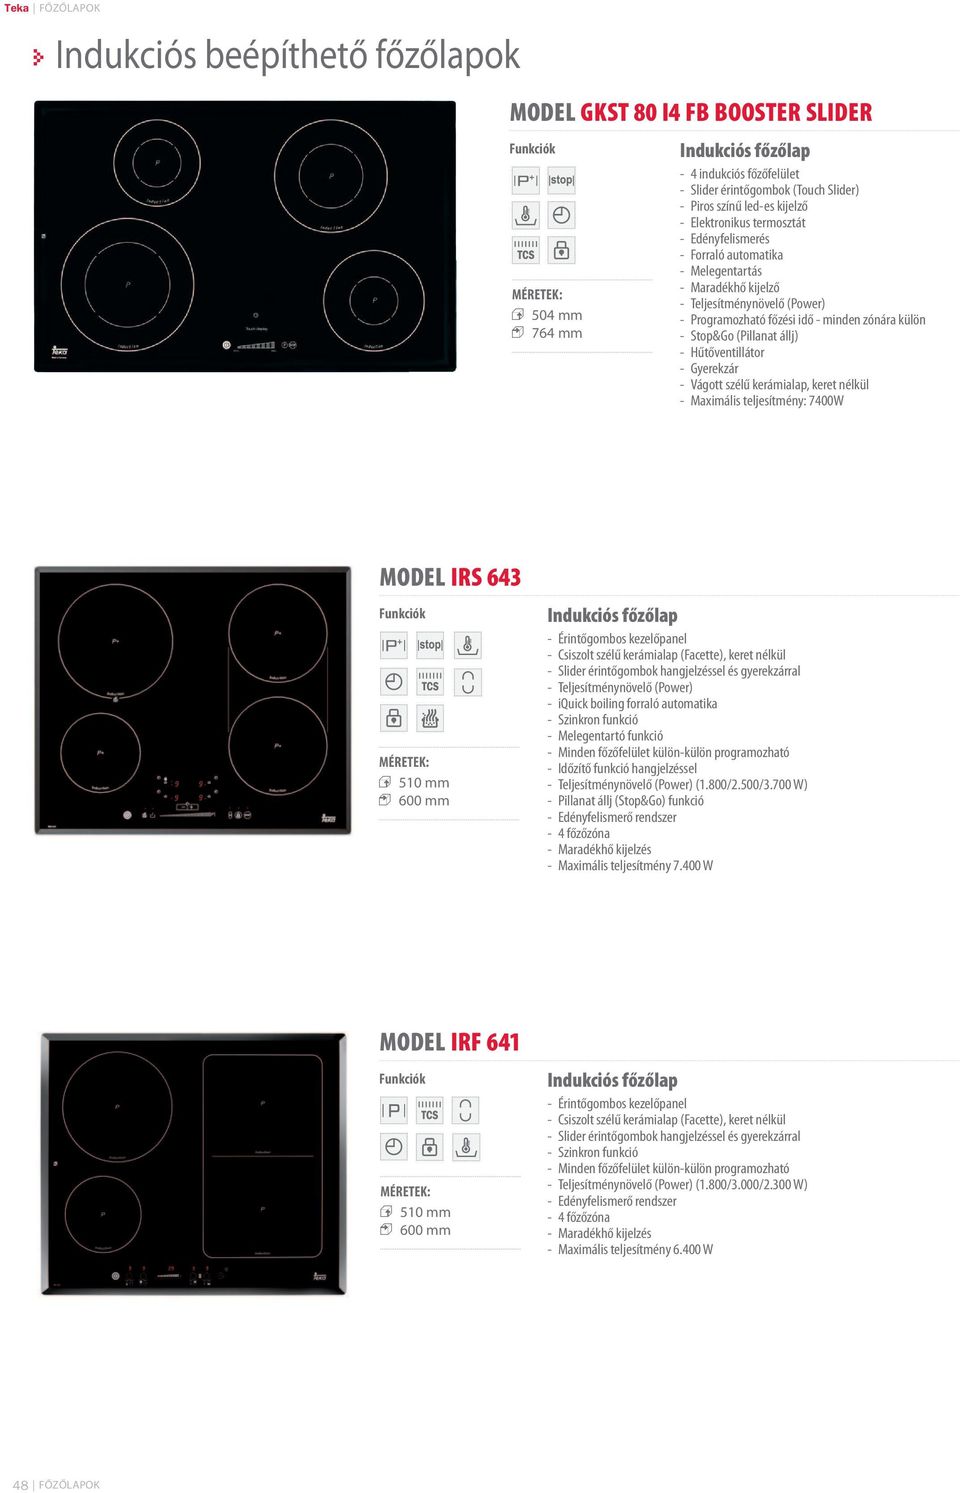 FŐZŐLAPOK High-tech megoldások és avan-garde design az Ön konyhájában - PDF  Free Download